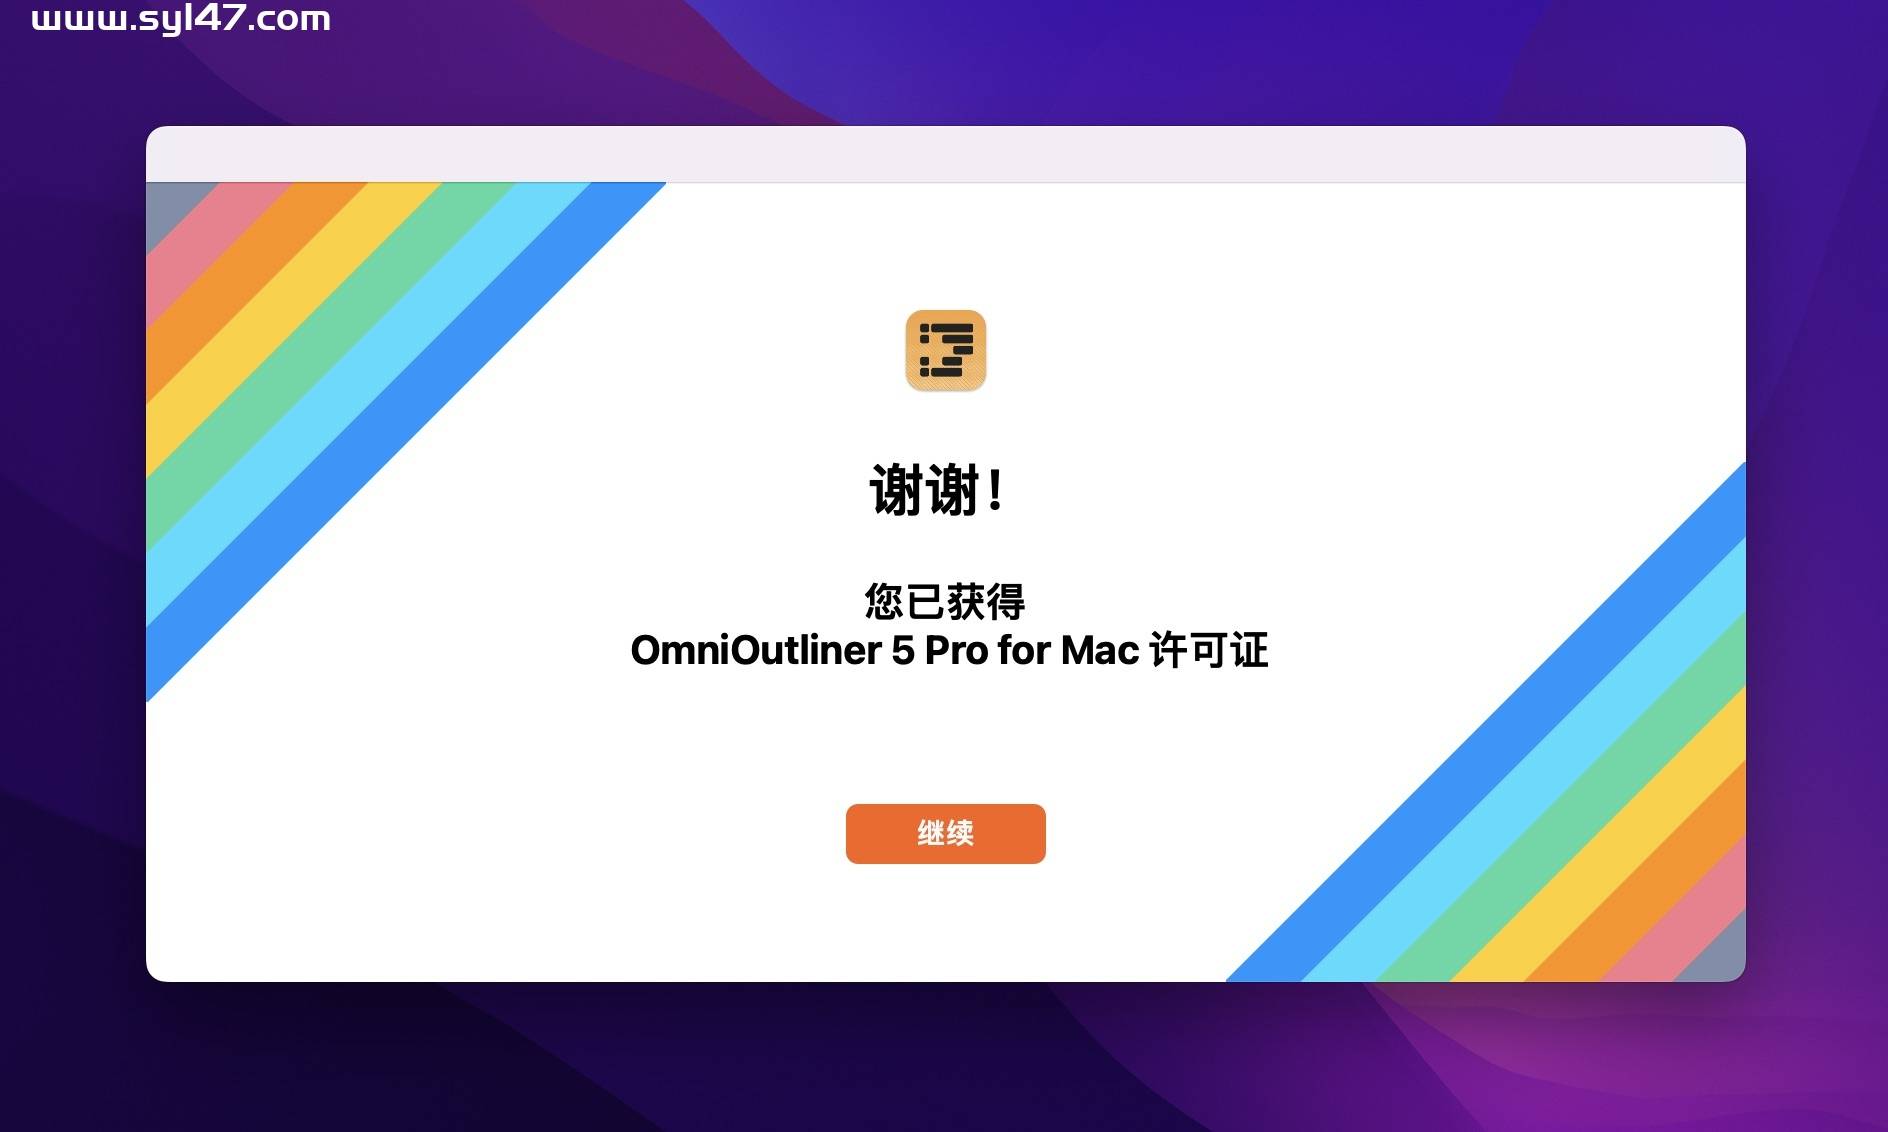 OmniOutliner 5 Pro for Mac 知识大纲管理神器插图5